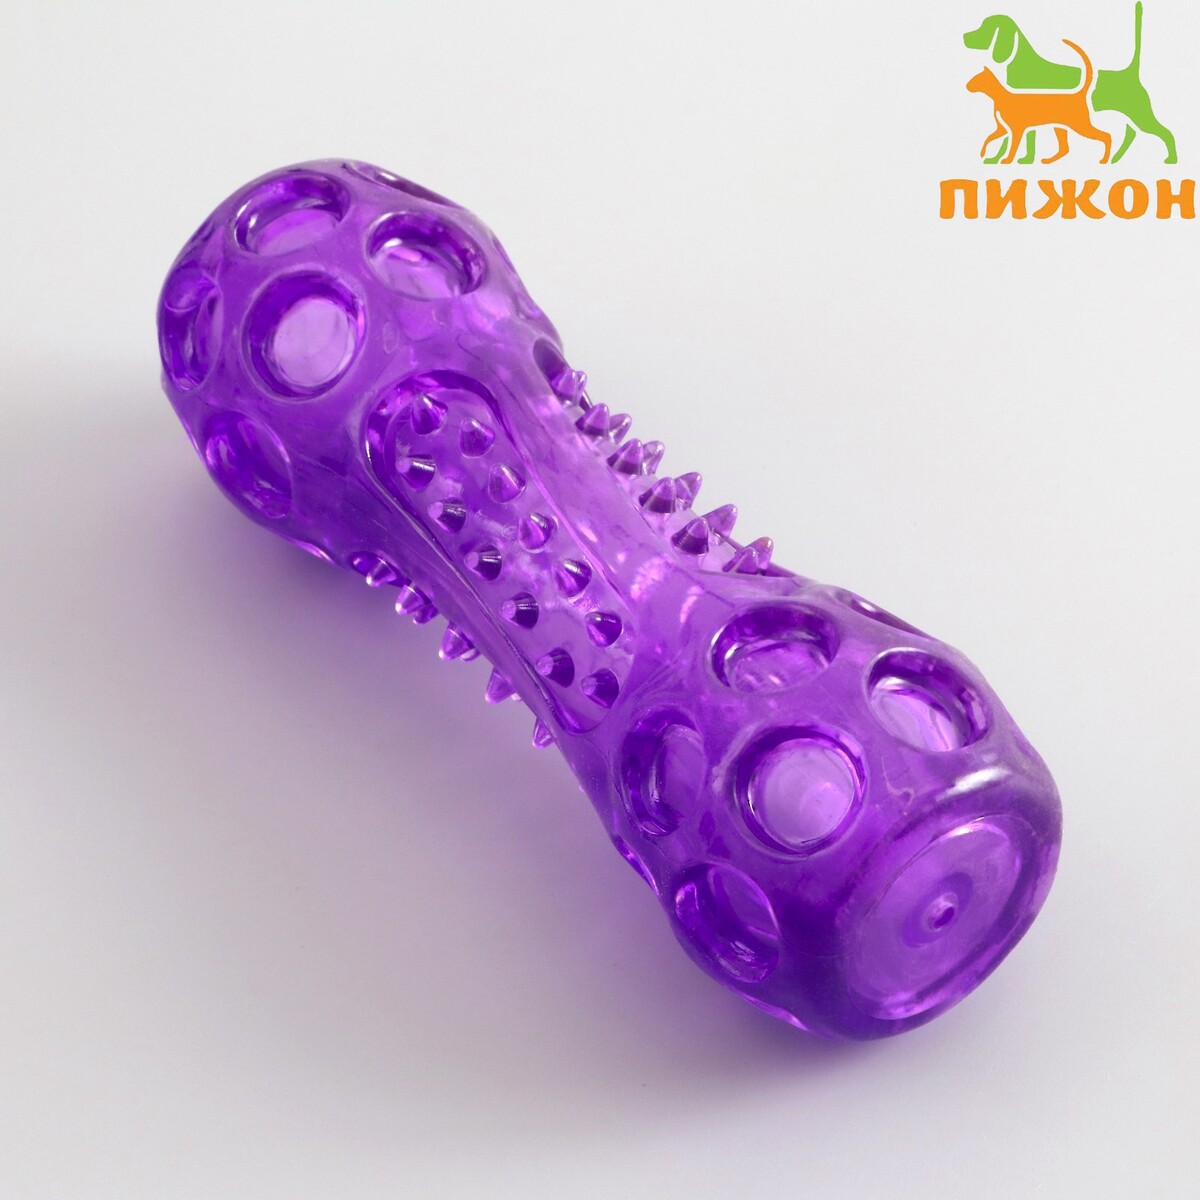 Игрушка-палка из термопластичной резины с утопленной пищалкой, фиолетовая гимнастическая палка live pro weighted bar lp8145 3